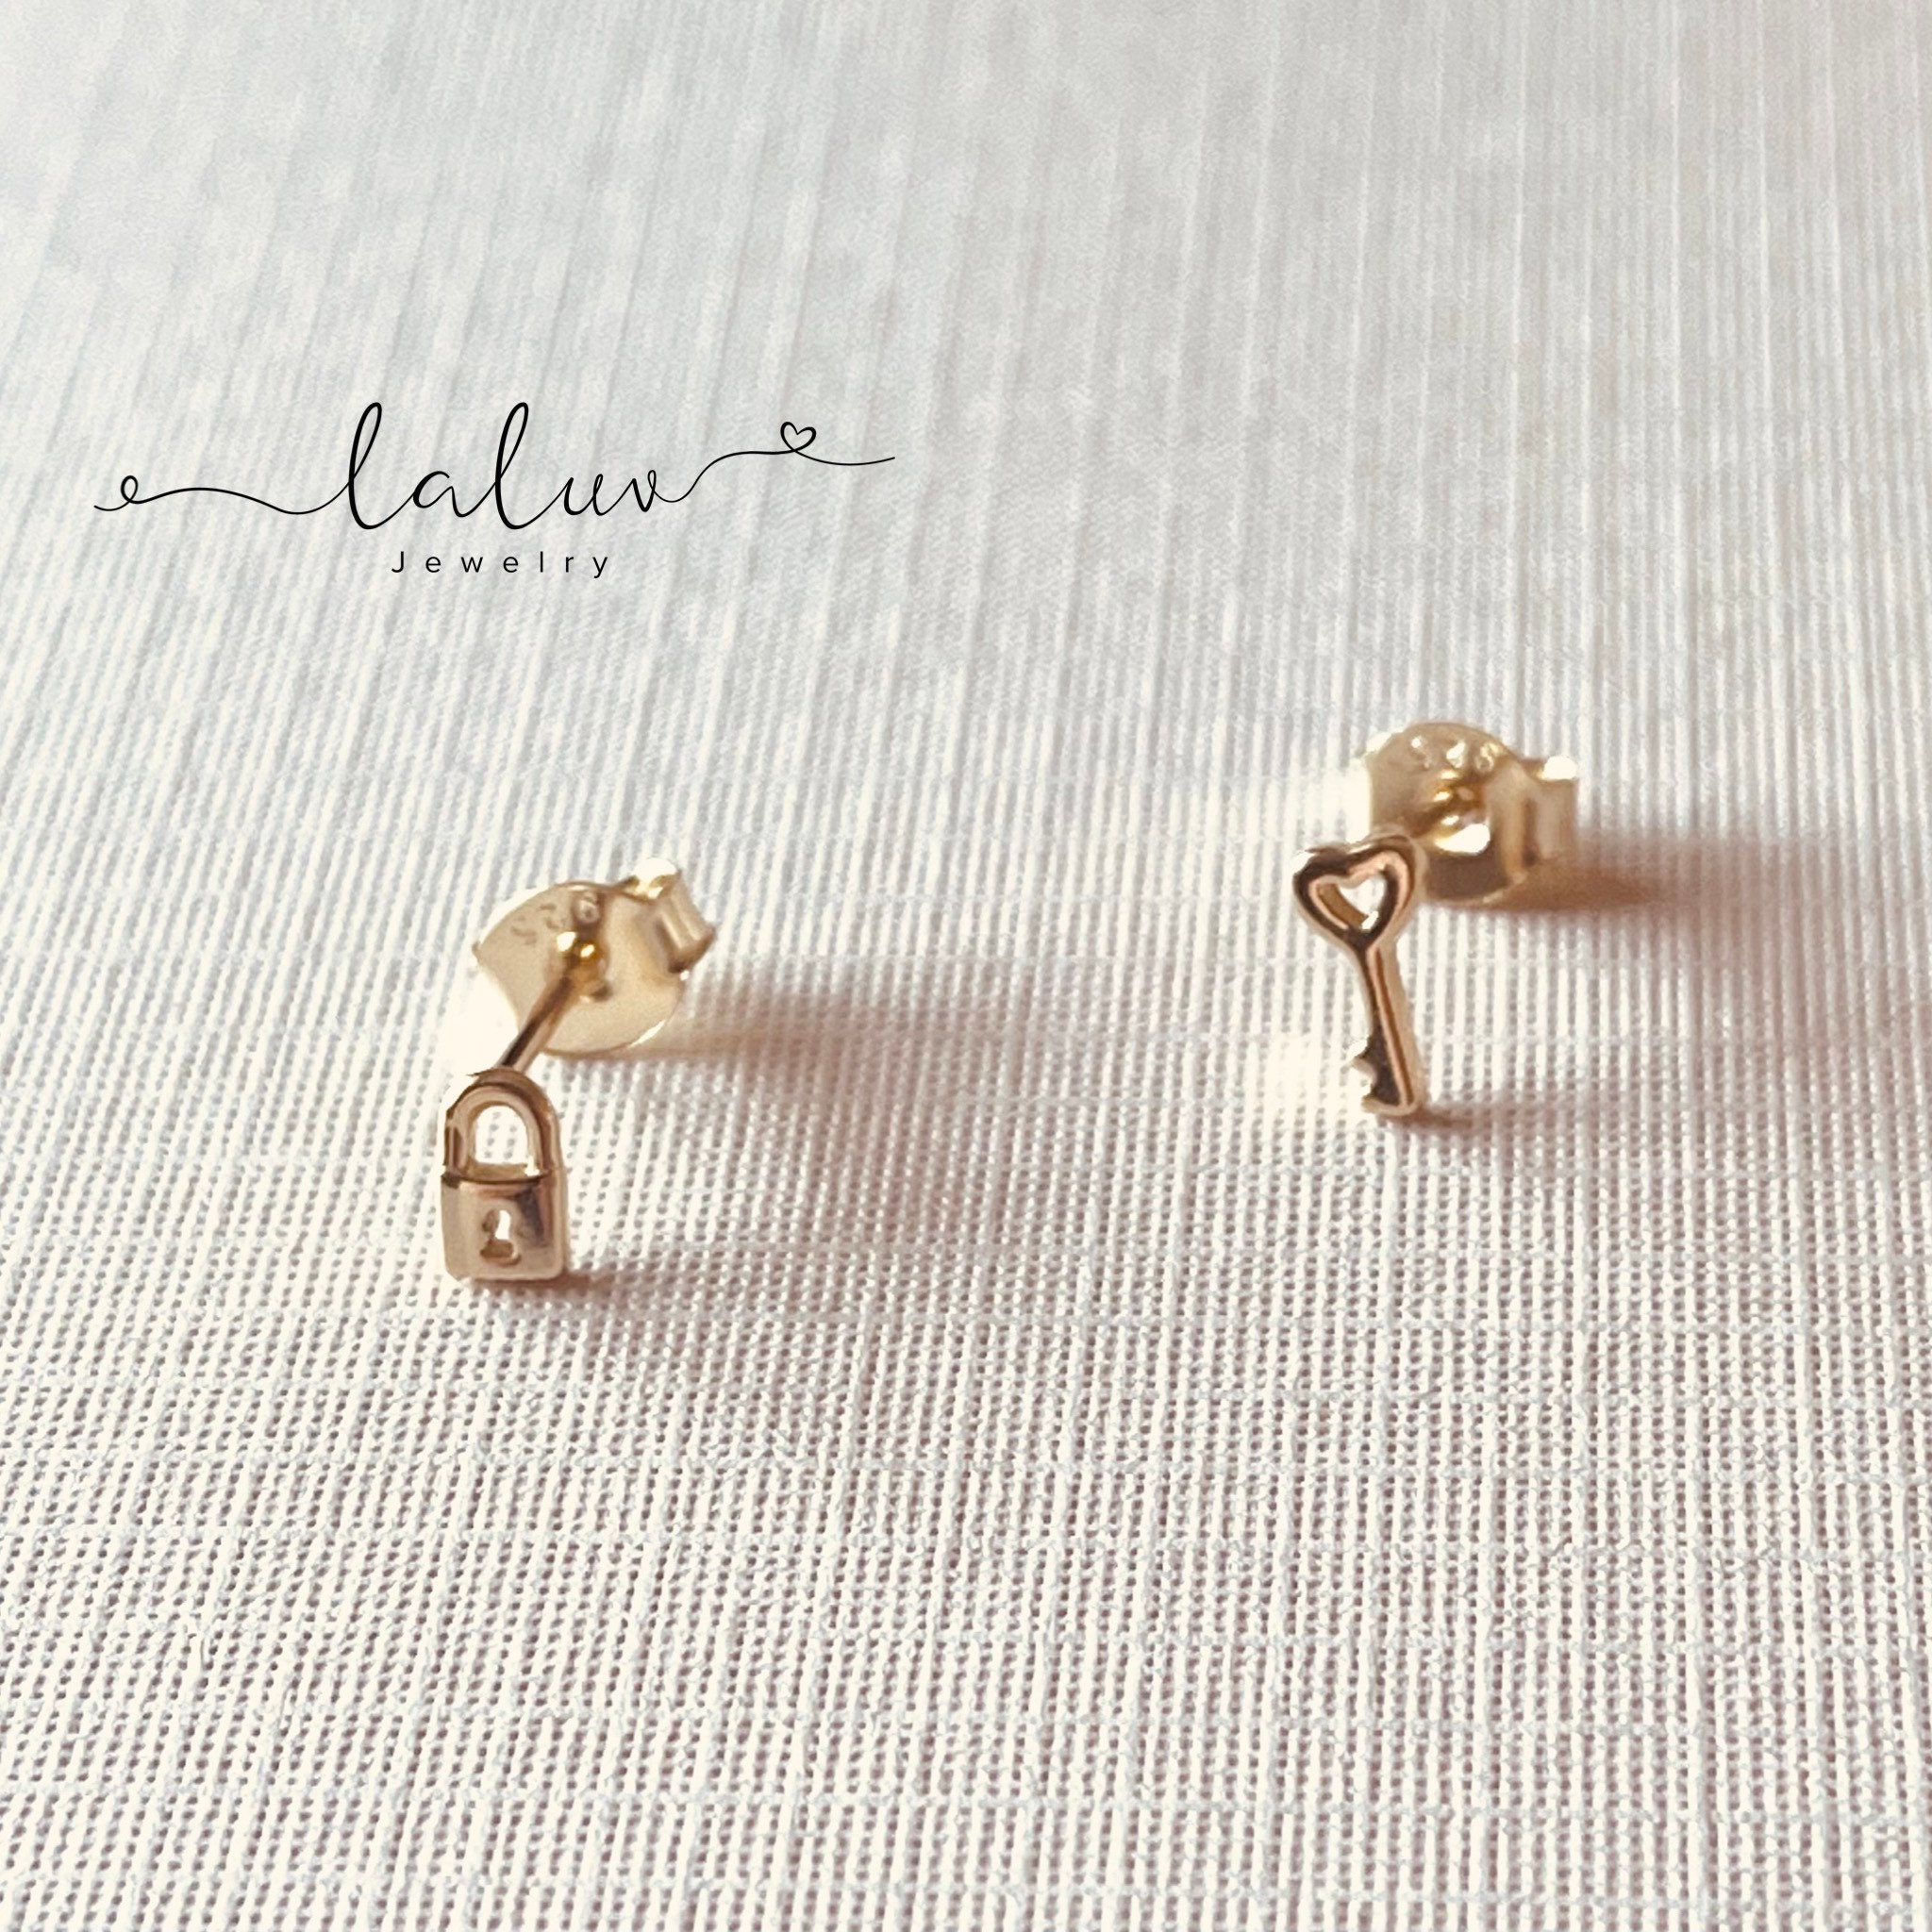 Gold Lock Drop Earrings by Frost Yourself Designs. 14kt.